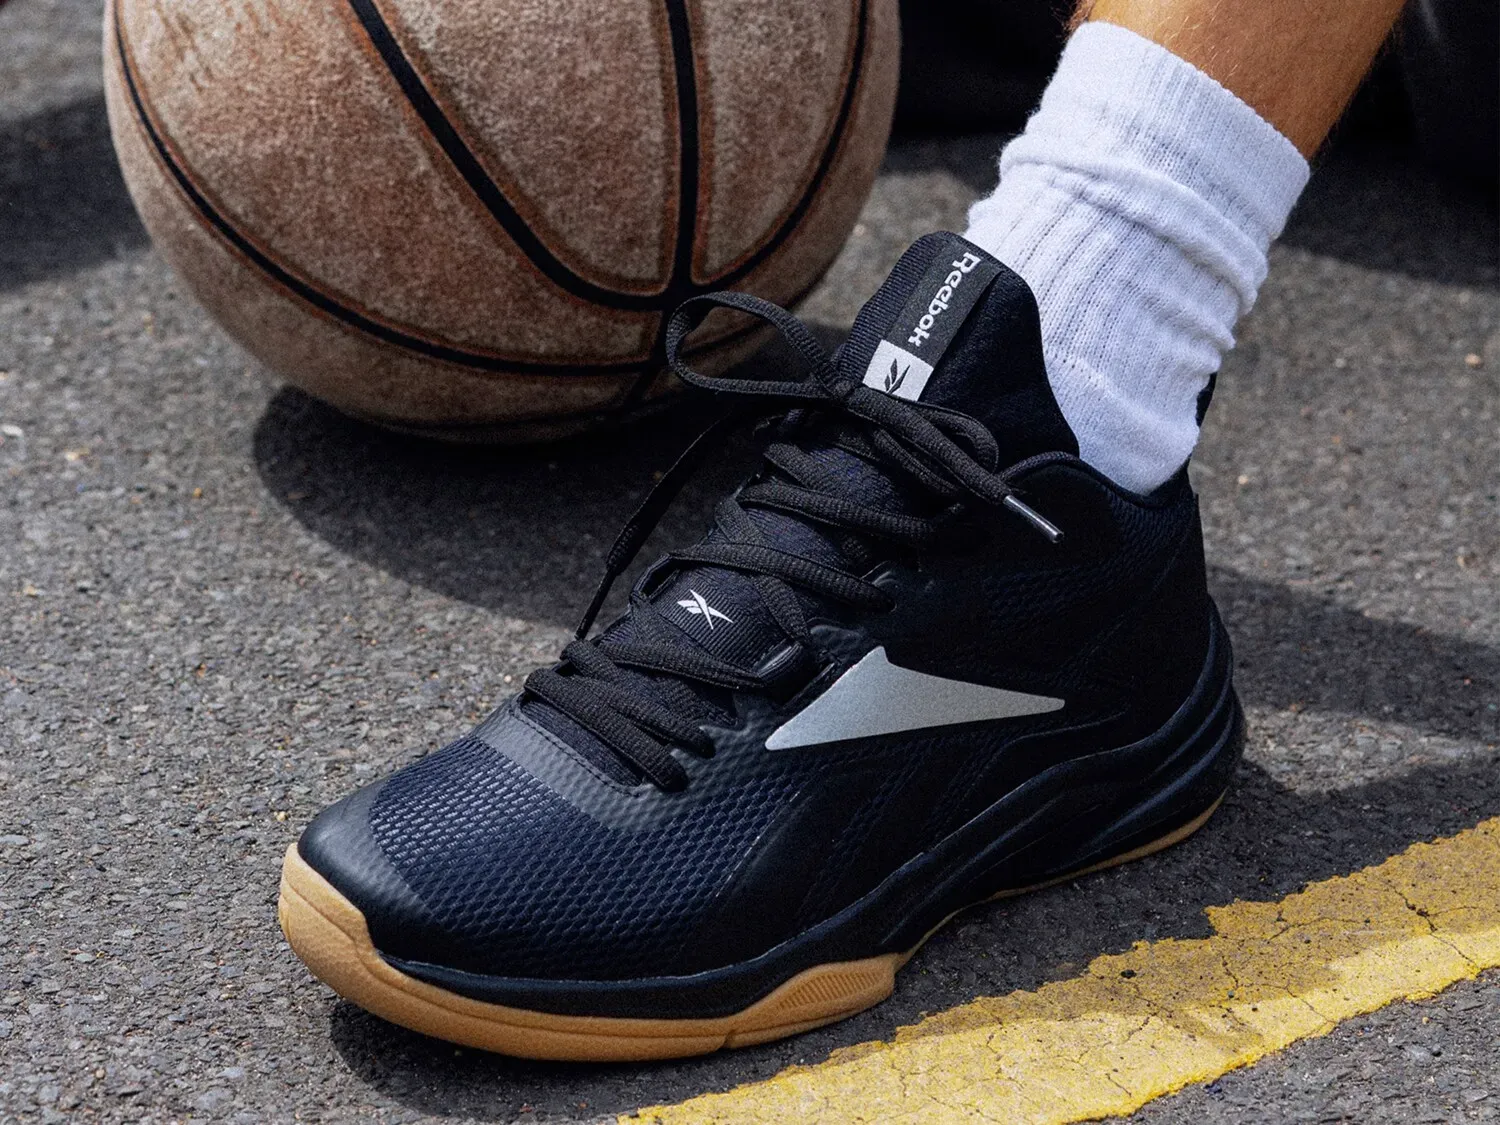 Giày bóng rổ có thiết kế ôm chân, khả năng chịu lực tốt nhằm tránh tổn thương chân